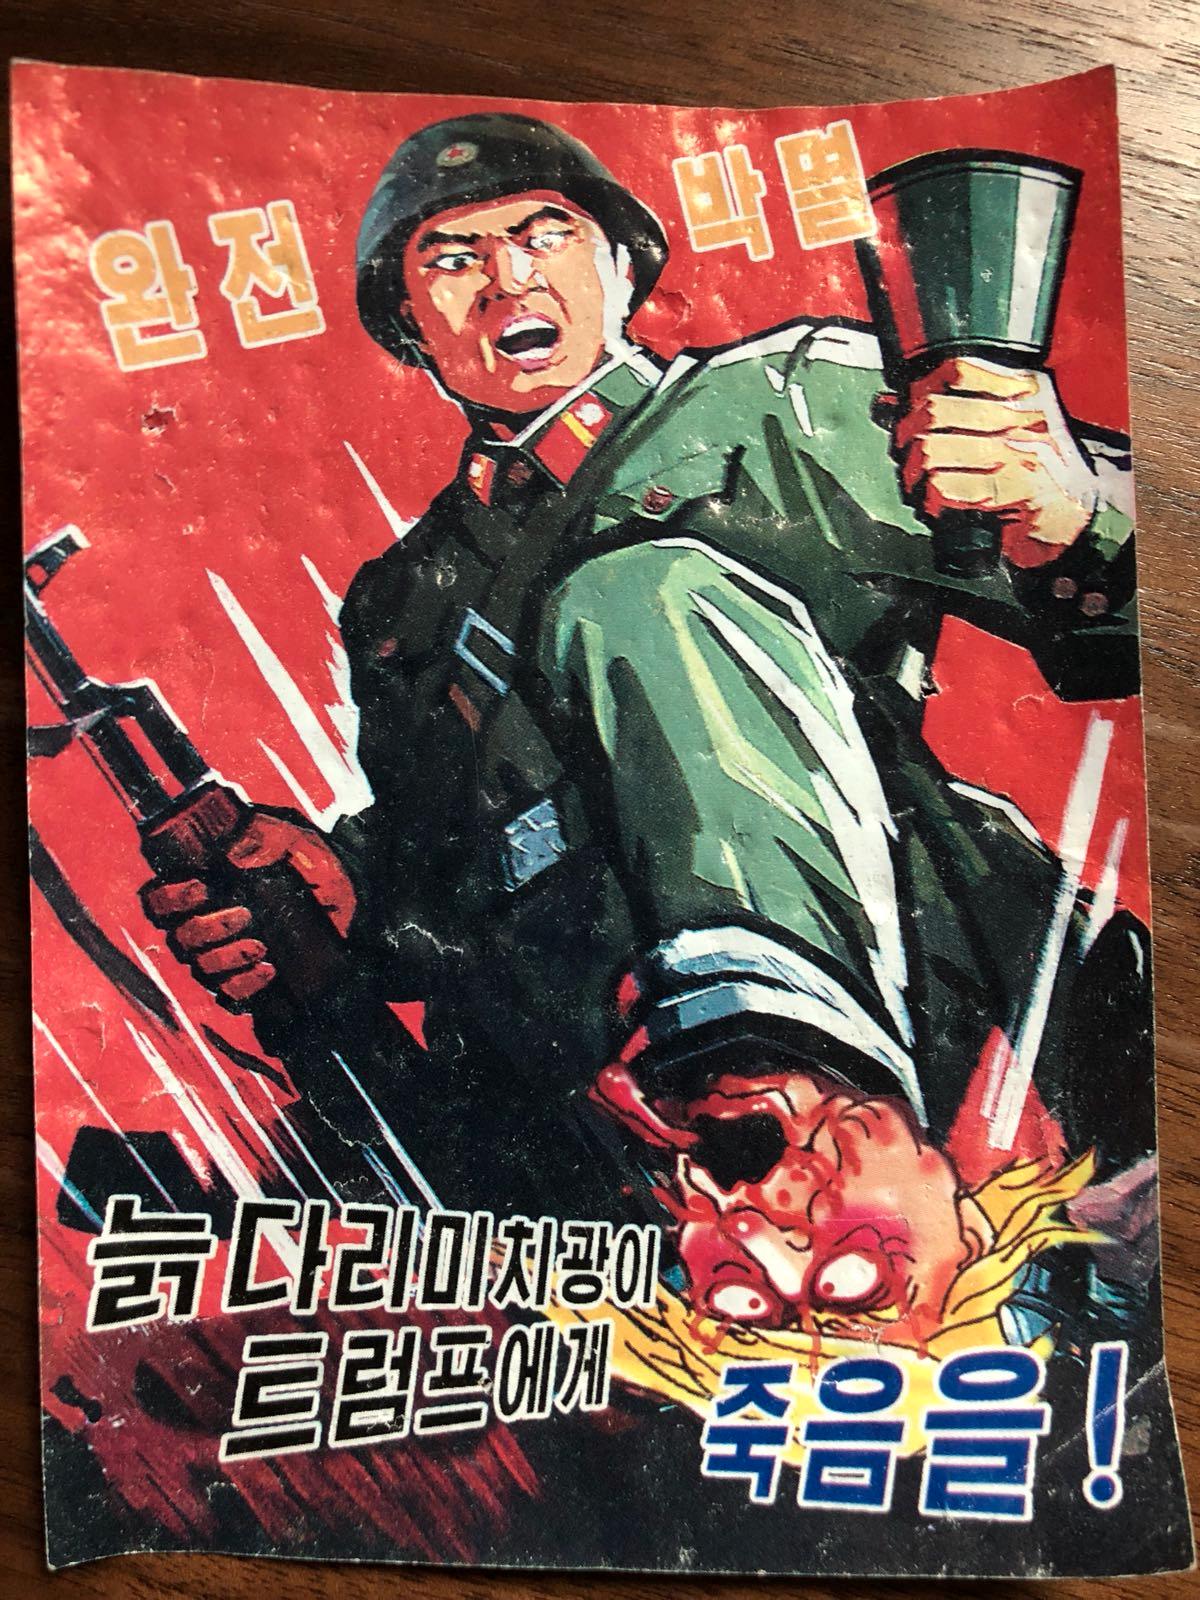 En till nordkoreansk propagandaaffisch. I texten på koreanska står det: ”Död åt en gammal galen gubbe Trump!”.